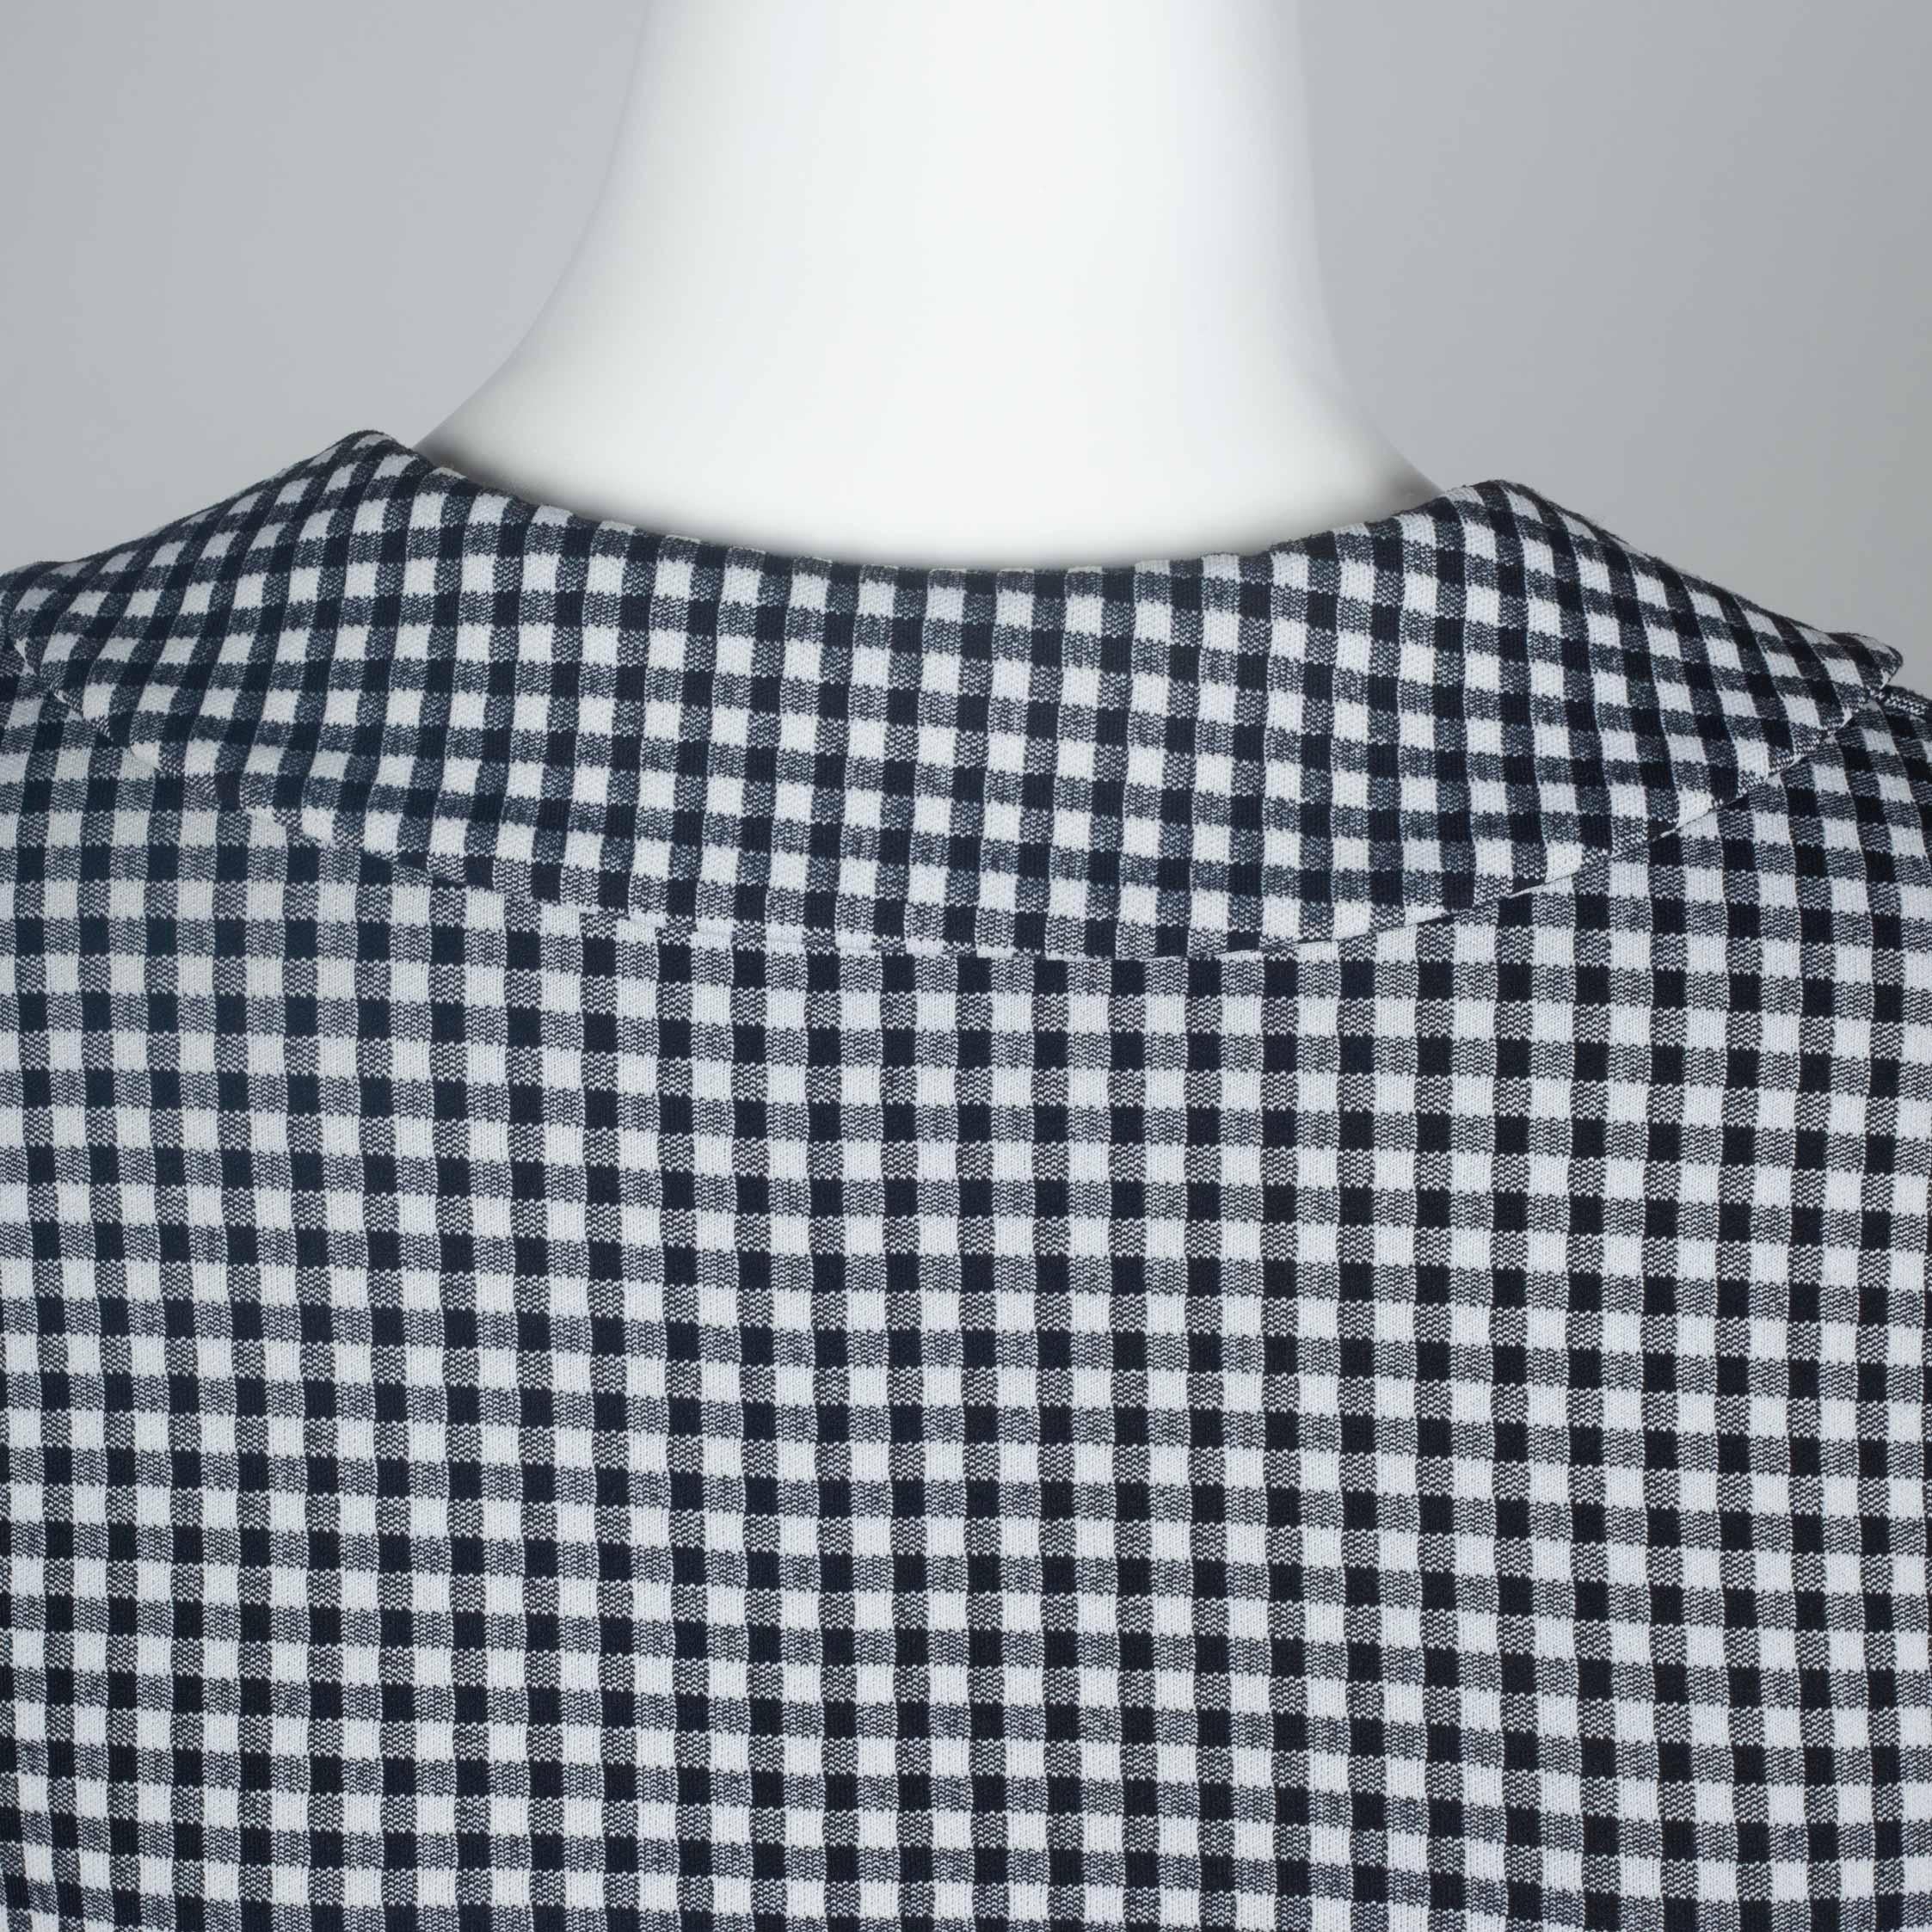  Comme des Garçons Checkered T-Shirt with Collar, 1996 6